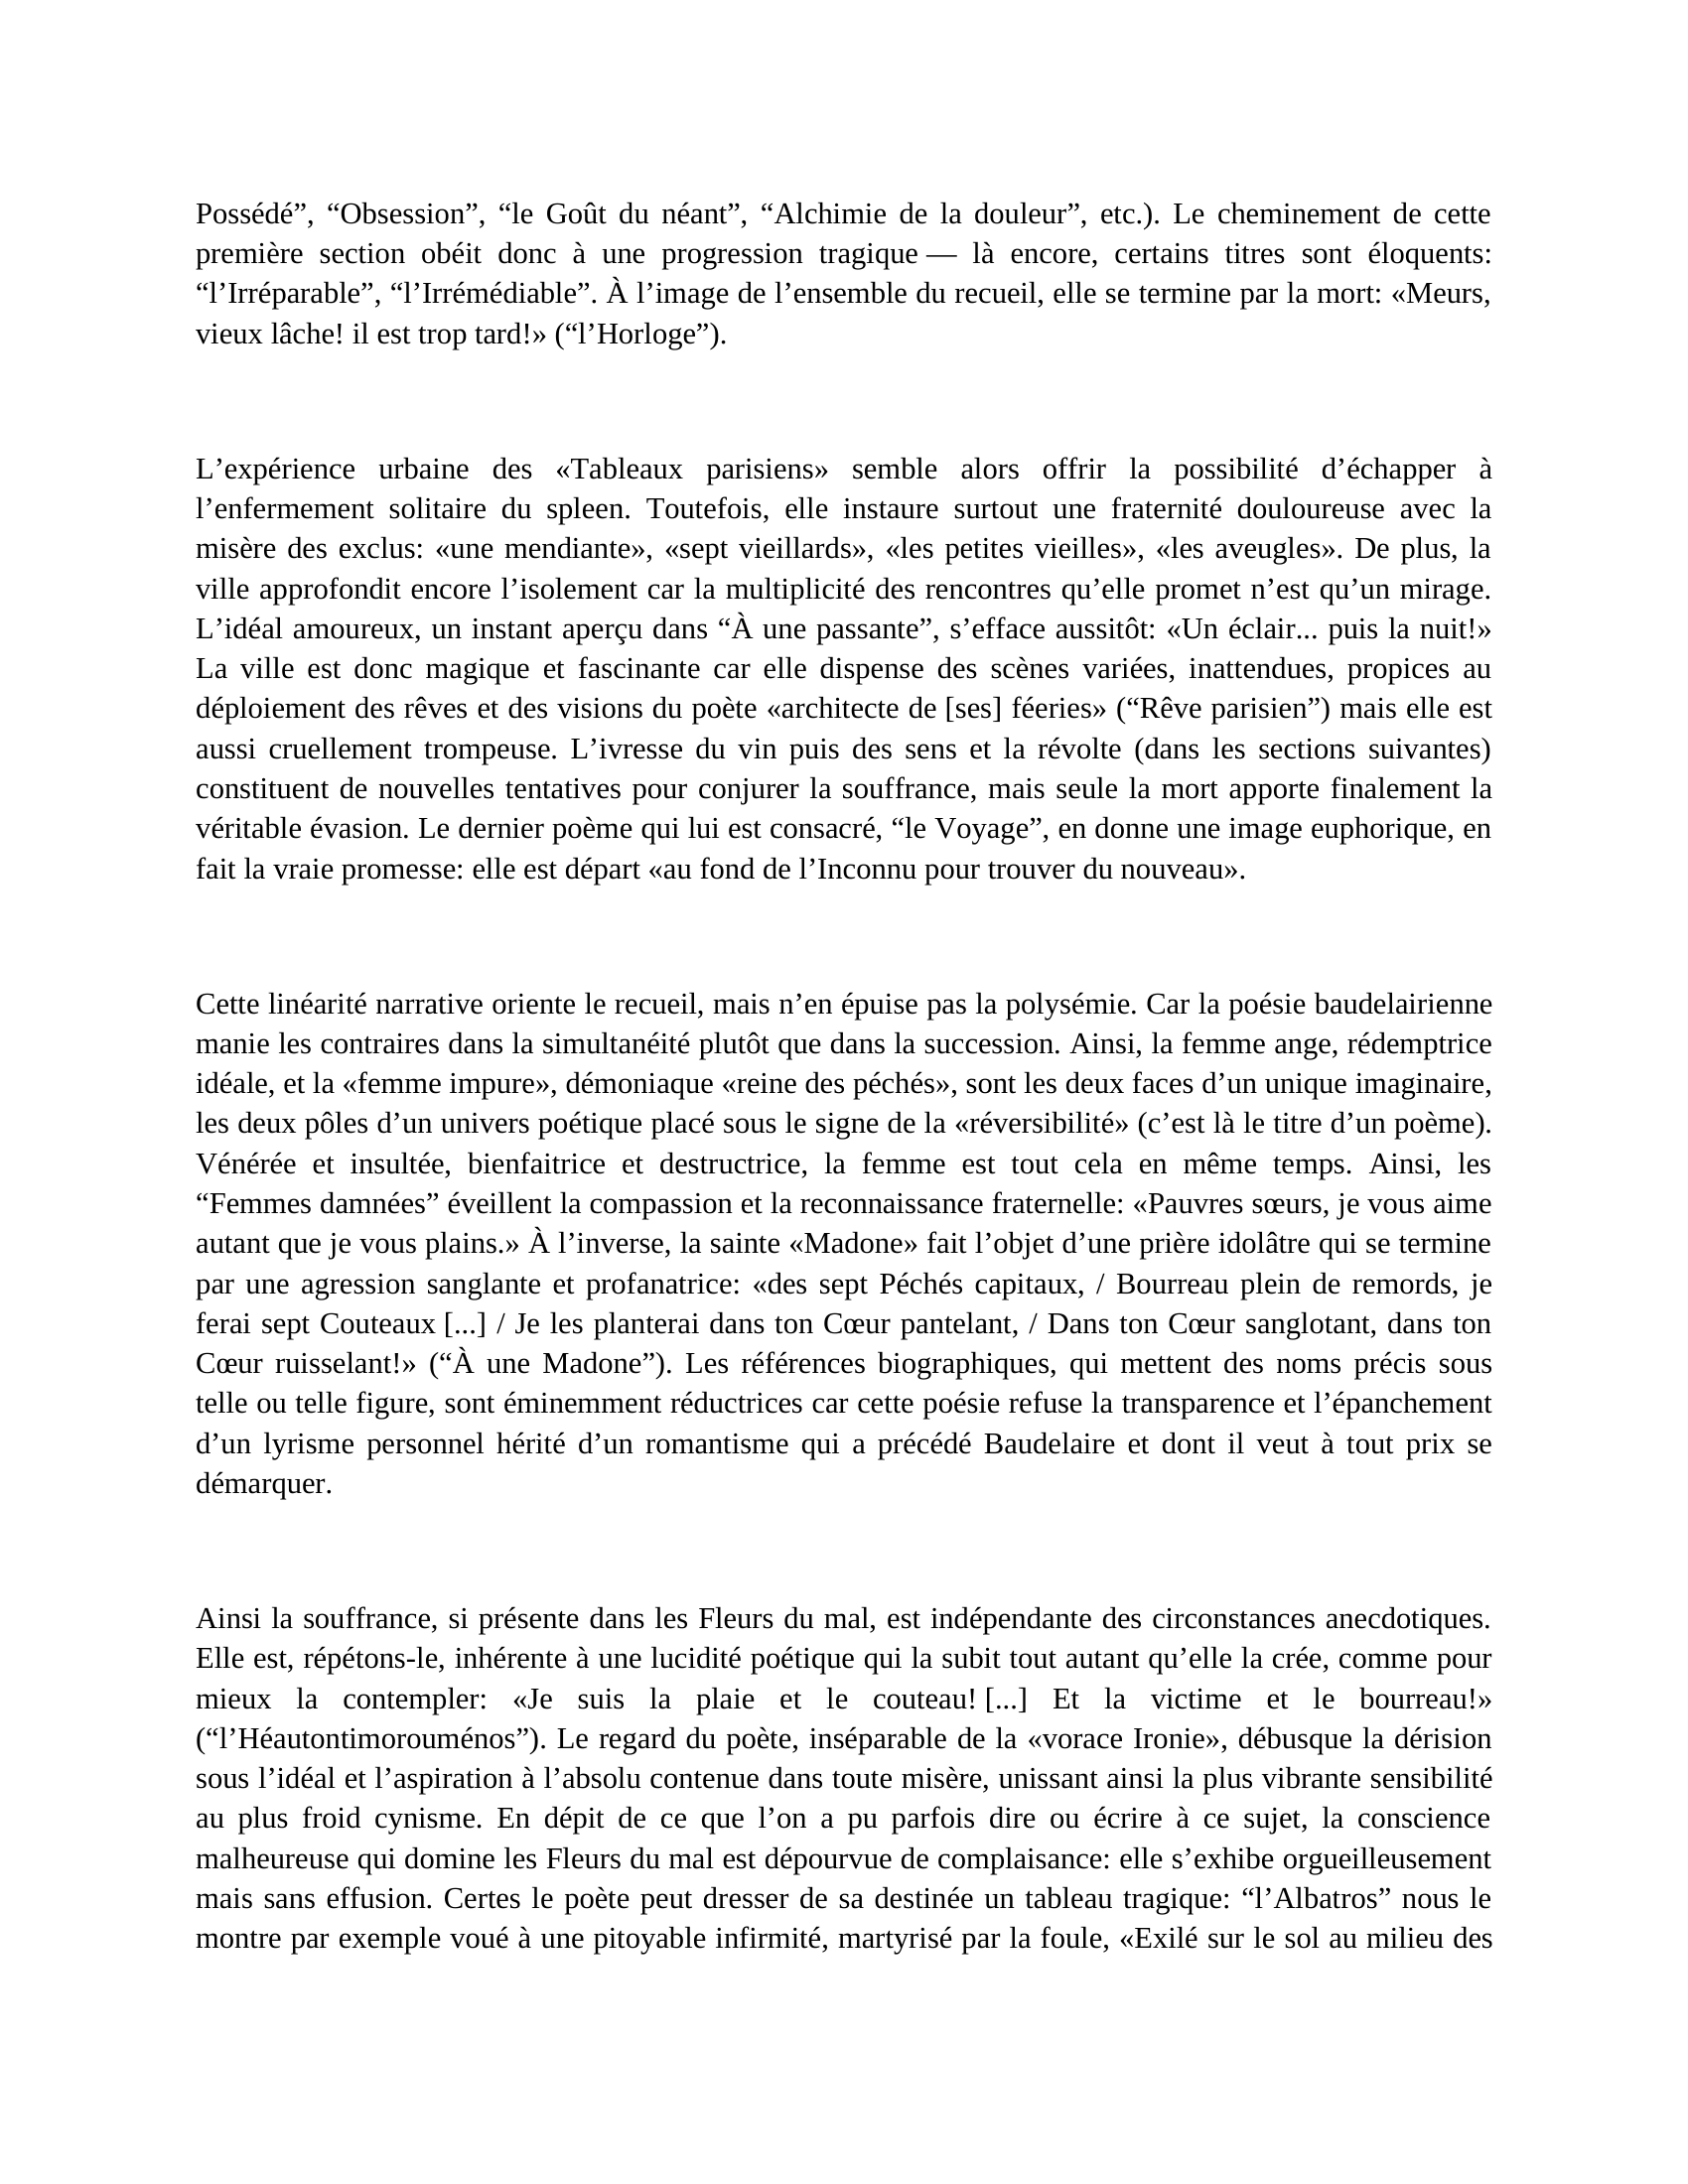 Prévisualisation du document Etude les Feurs du Mal de Charles Baudelaire